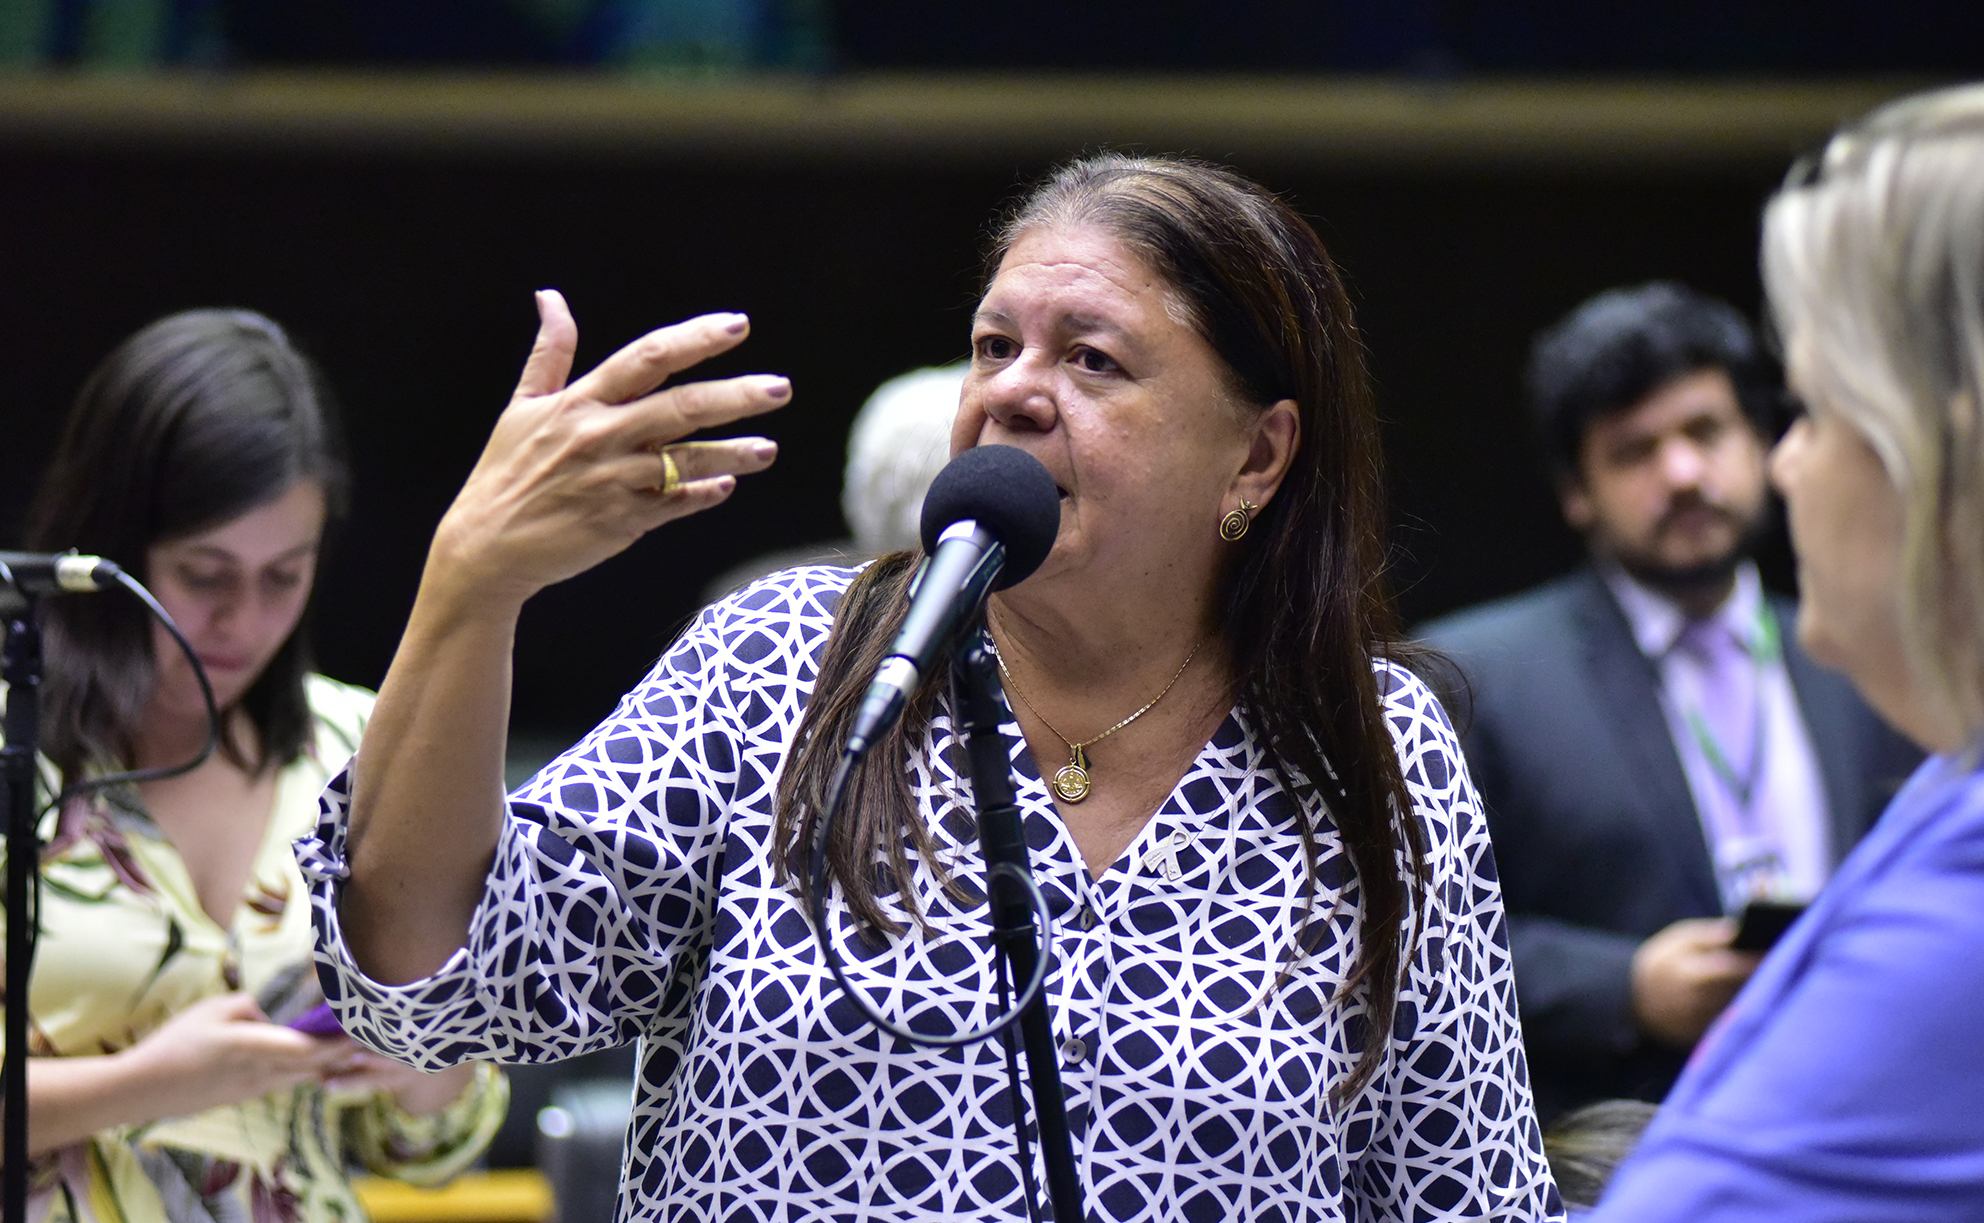 Discussão e votação de propostas. Dep. Laura Carneiro (PSD - RJ)